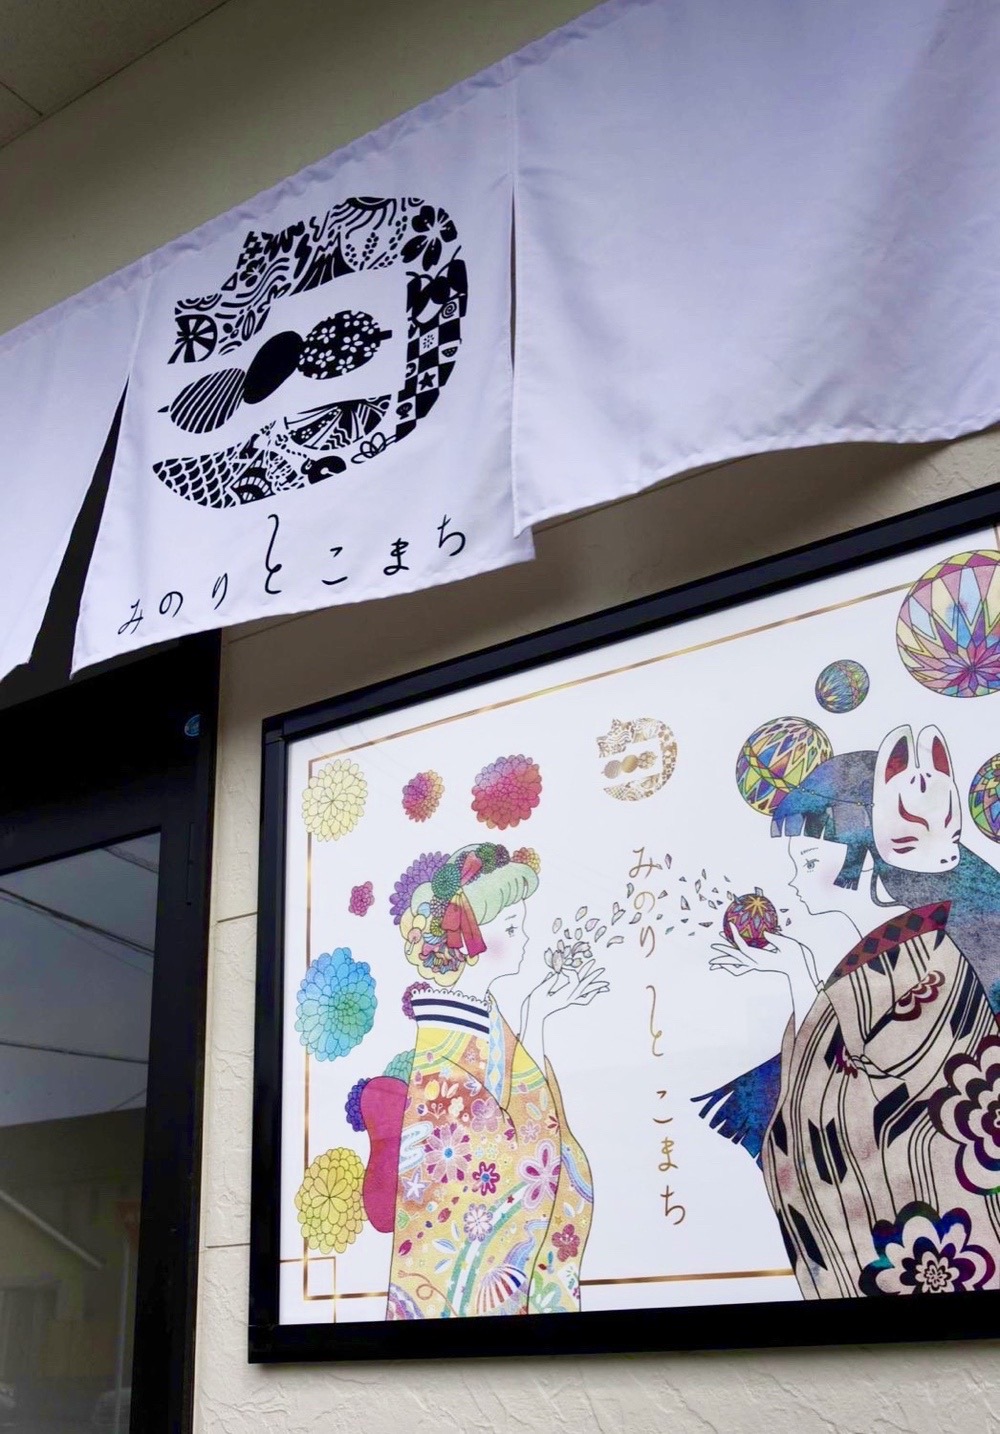 福岡県久留米市 イメージキャラクター“みのりとこまち”二人の少女が掲載された看板